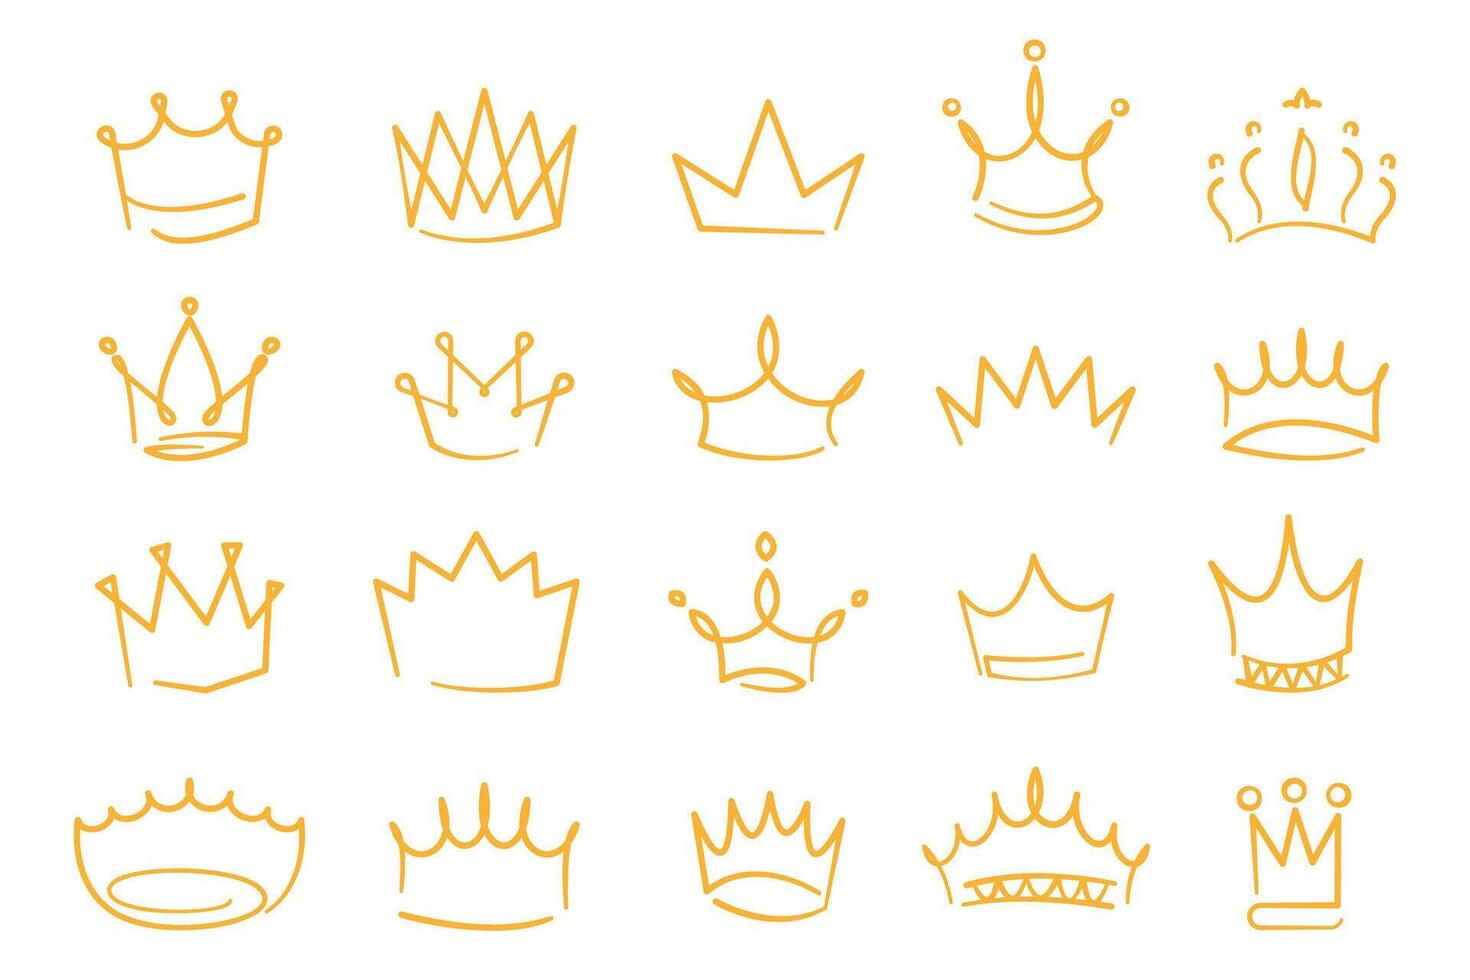 bosquejo dorado coronas contorno princesa tiara y coronación decoraciones moderno mano dibujado realeza simbolos vector aislado conjunto